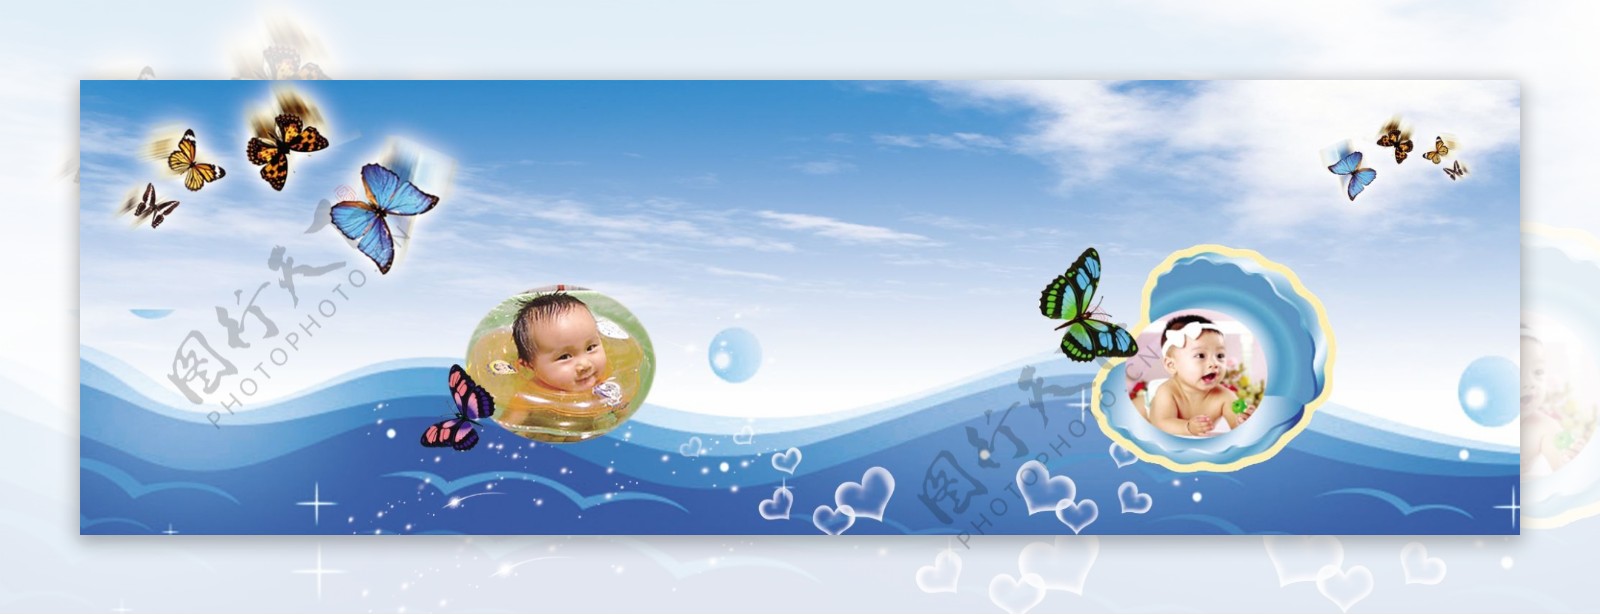 婴幼儿游泳素材图片